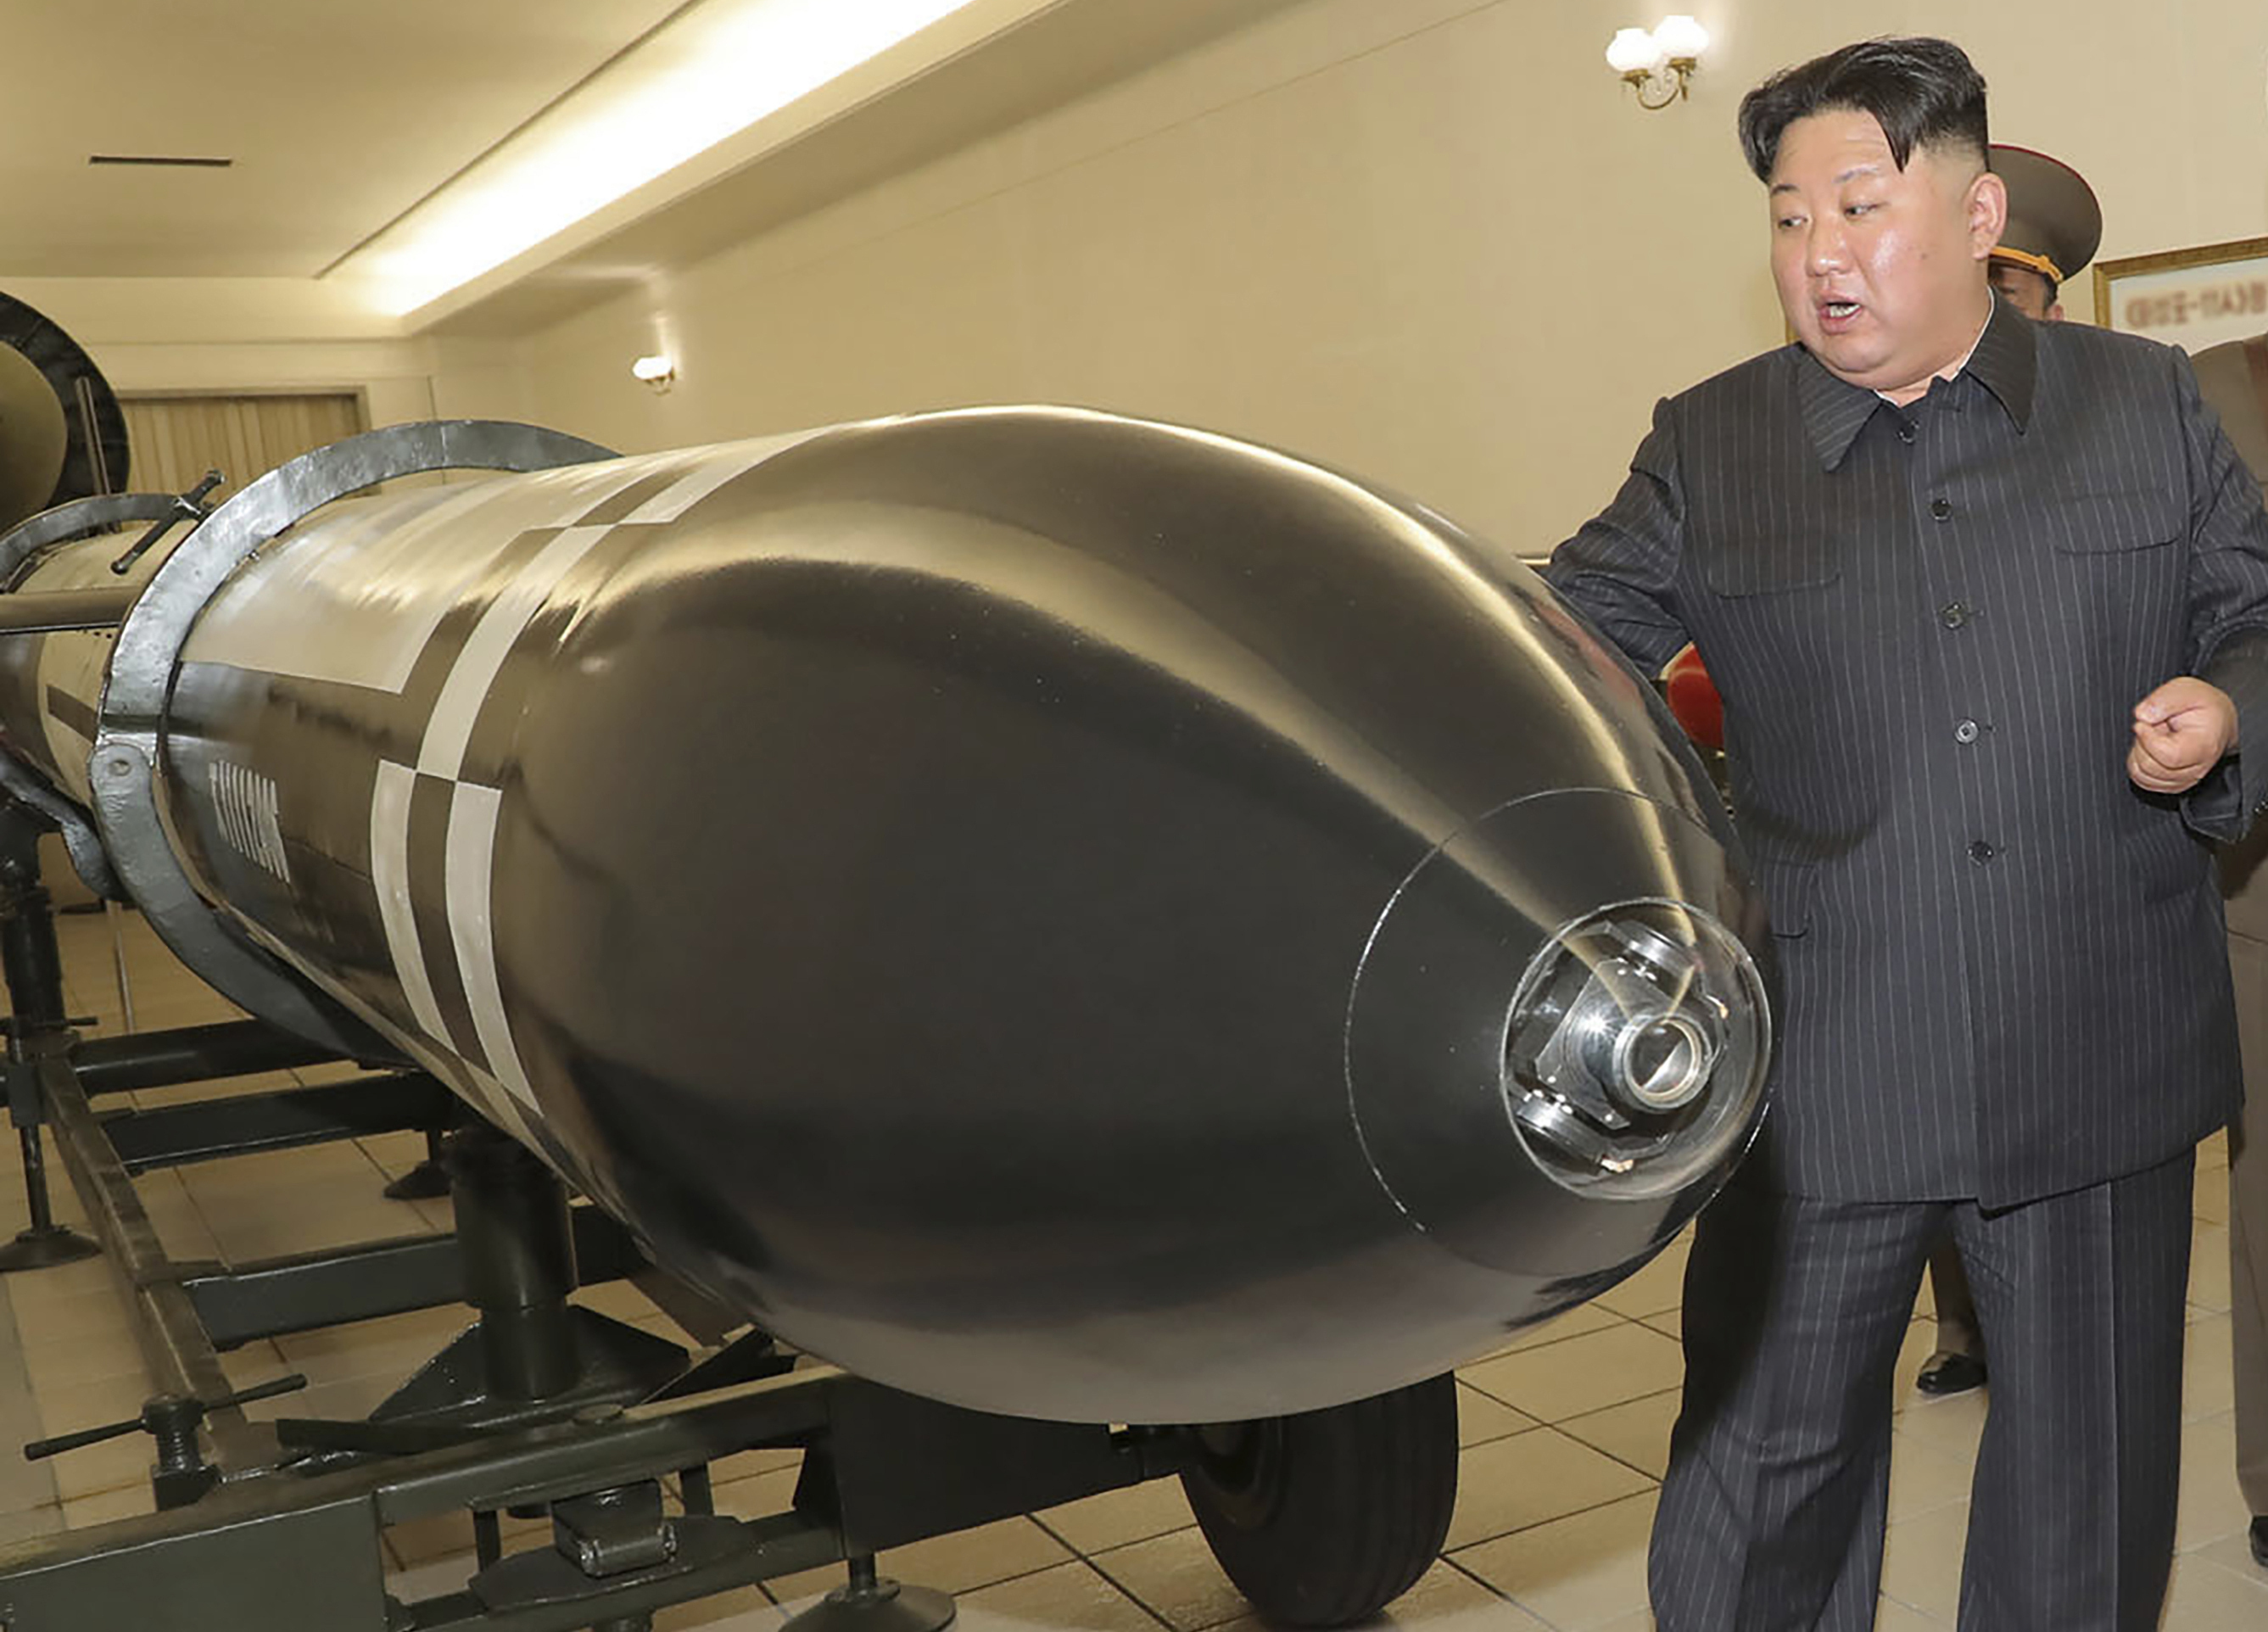 Corea del Norte reafirmó su postura como potencia nuclear mundial a pesar de los pedidos del G7 (AP)